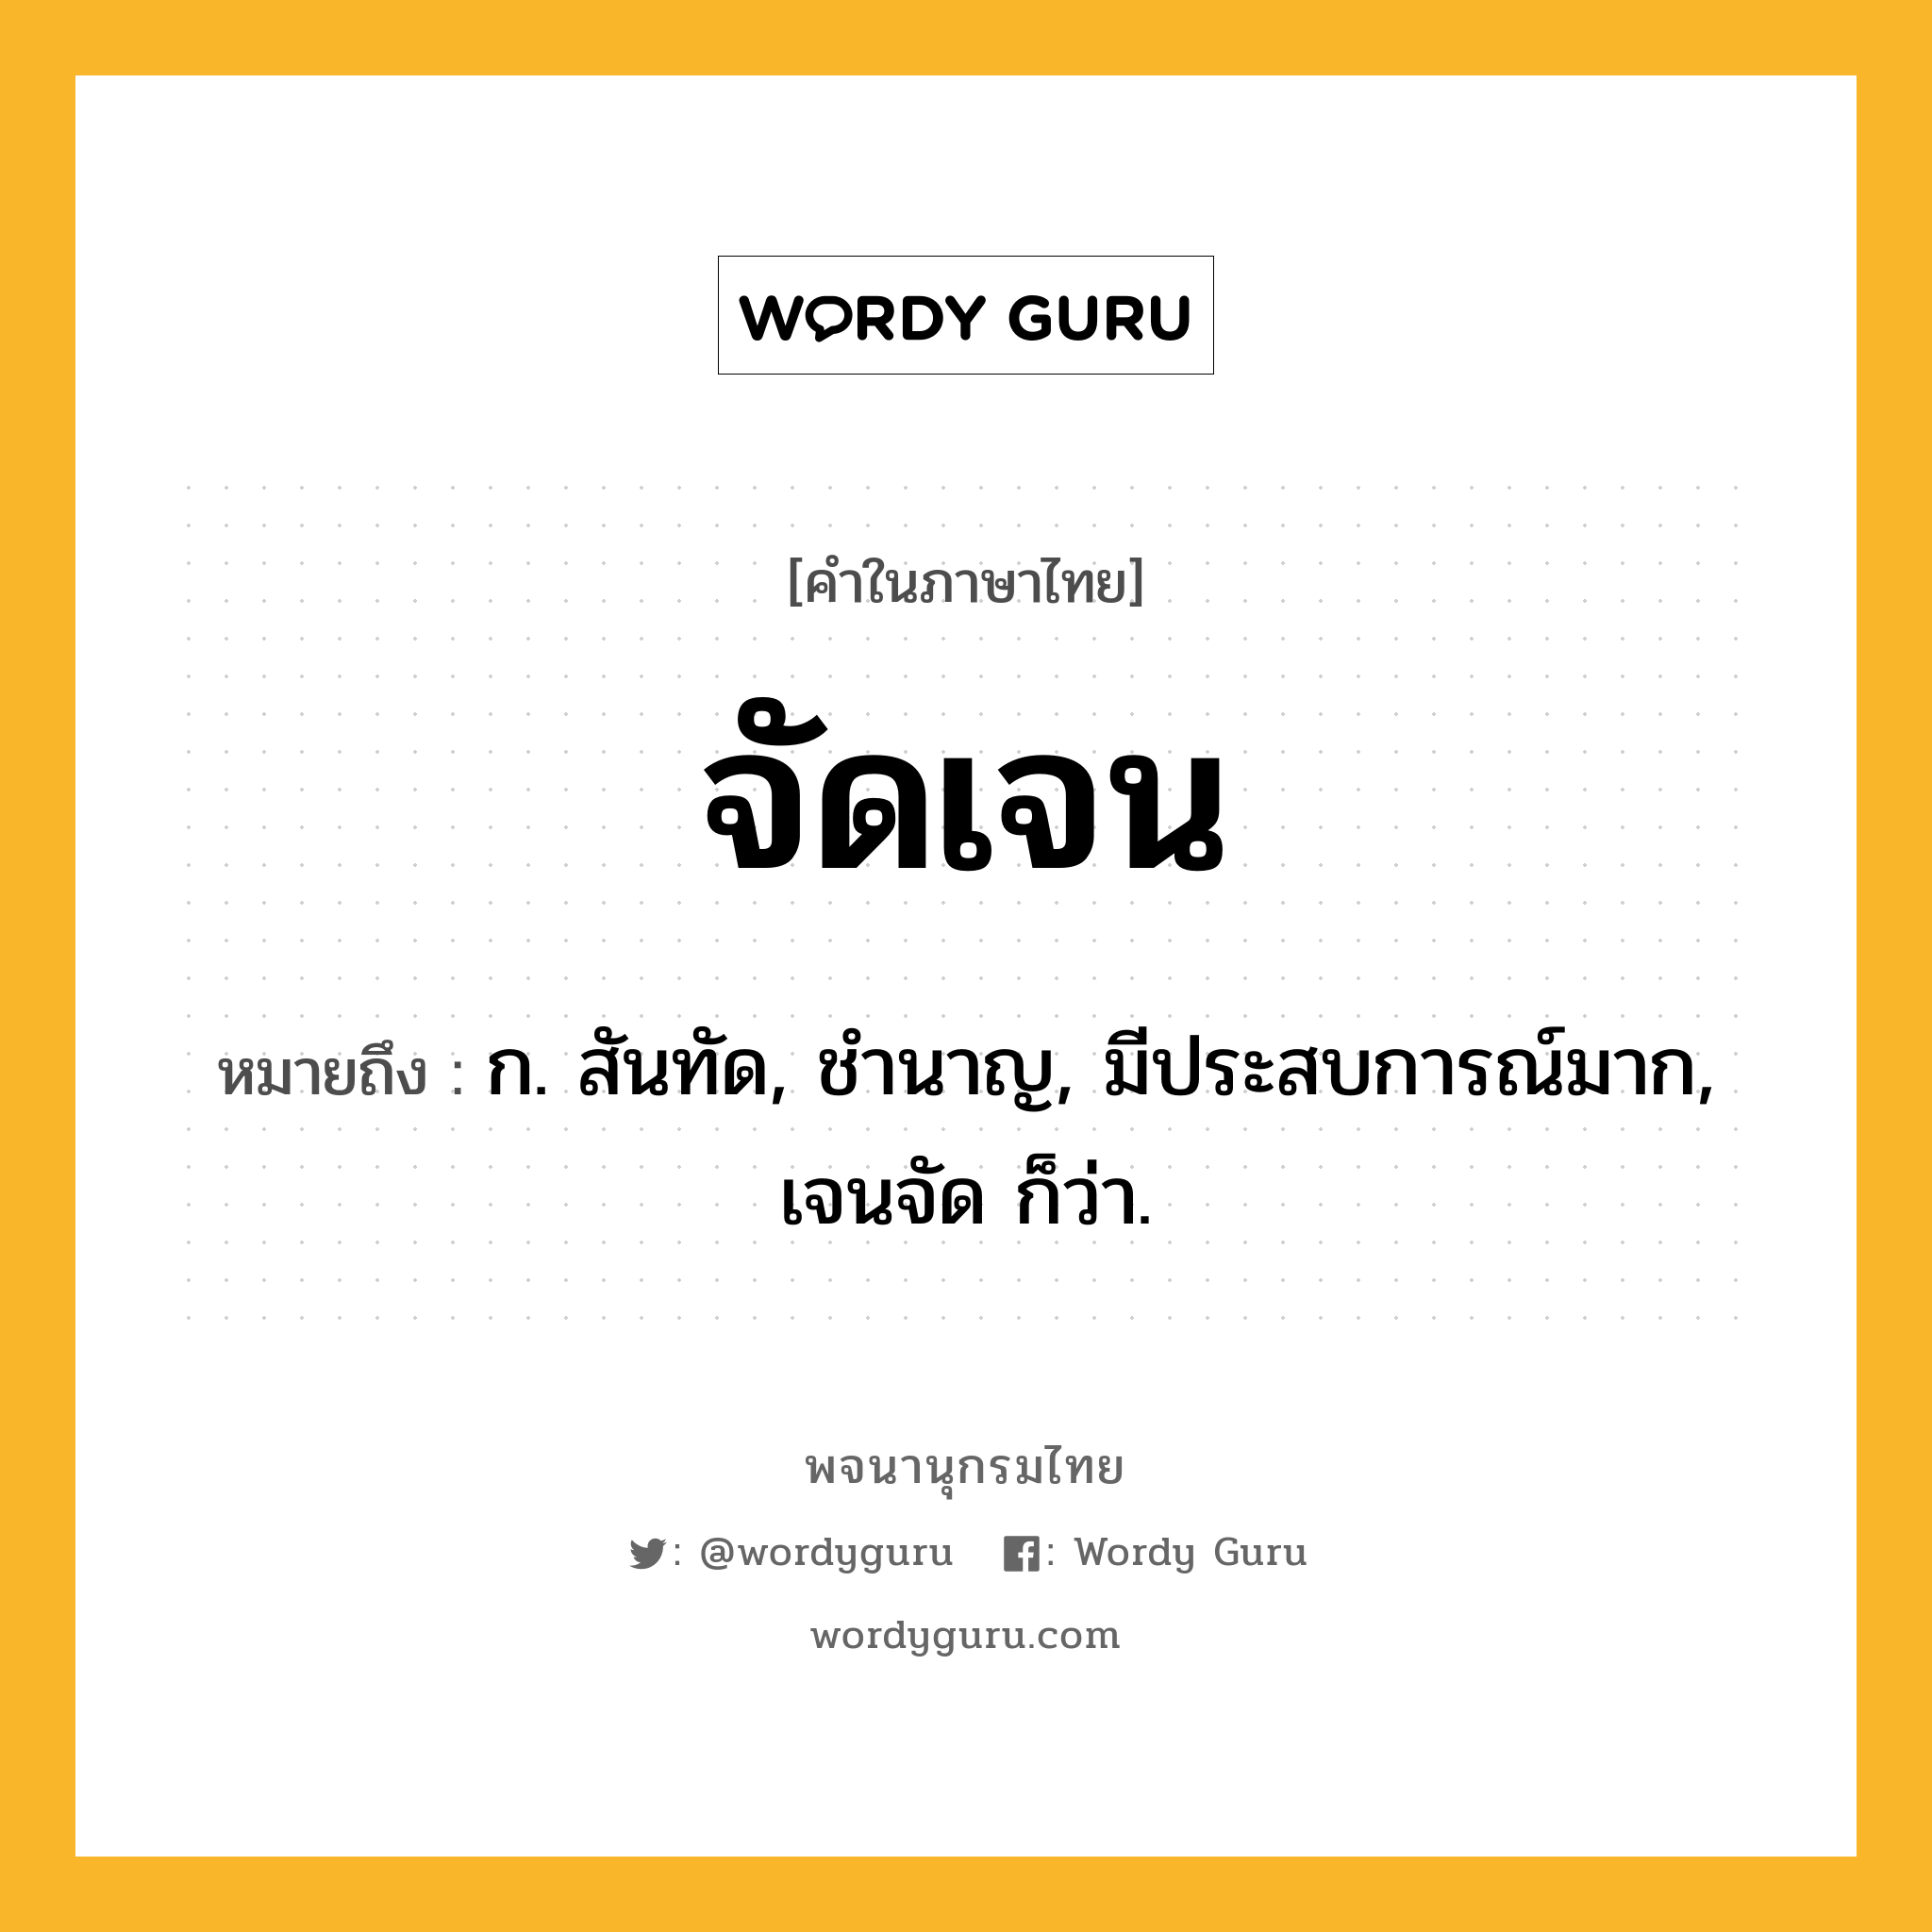 จัดเจน หมายถึงอะไร?, คำในภาษาไทย จัดเจน หมายถึง ก. สันทัด, ชํานาญ, มีประสบการณ์มาก, เจนจัด ก็ว่า.